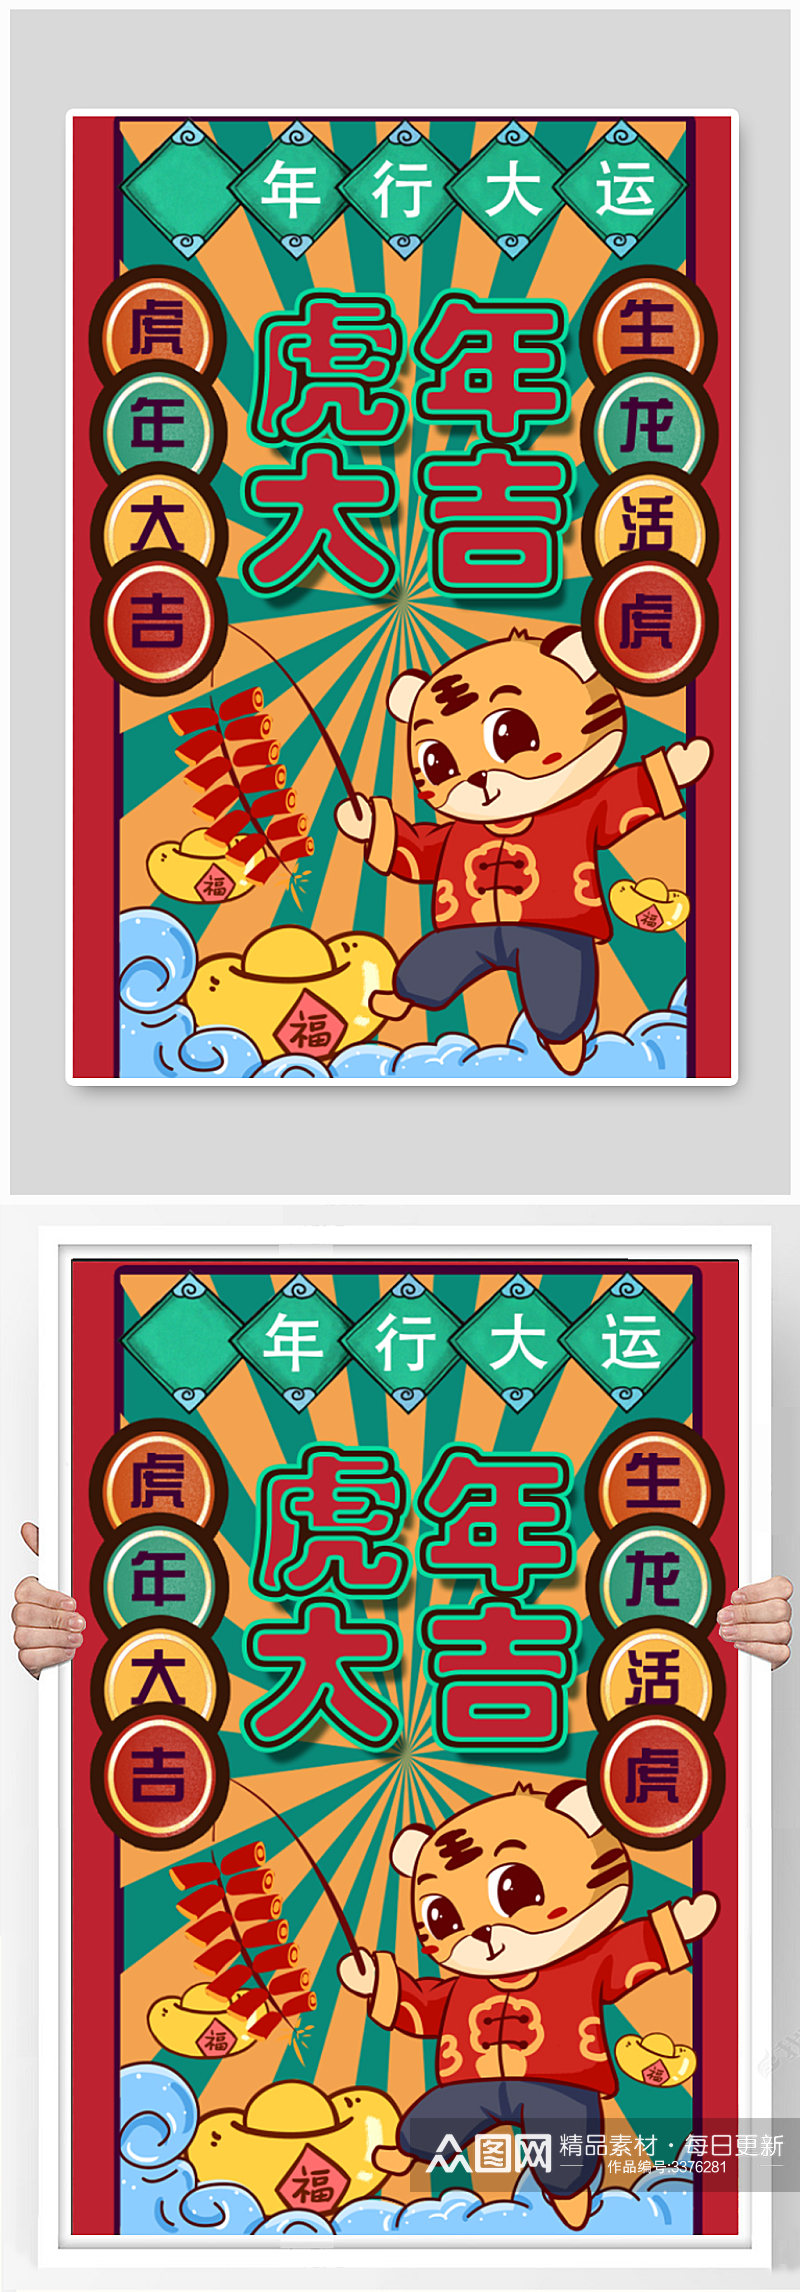 虎年行大运春节海报设计素材